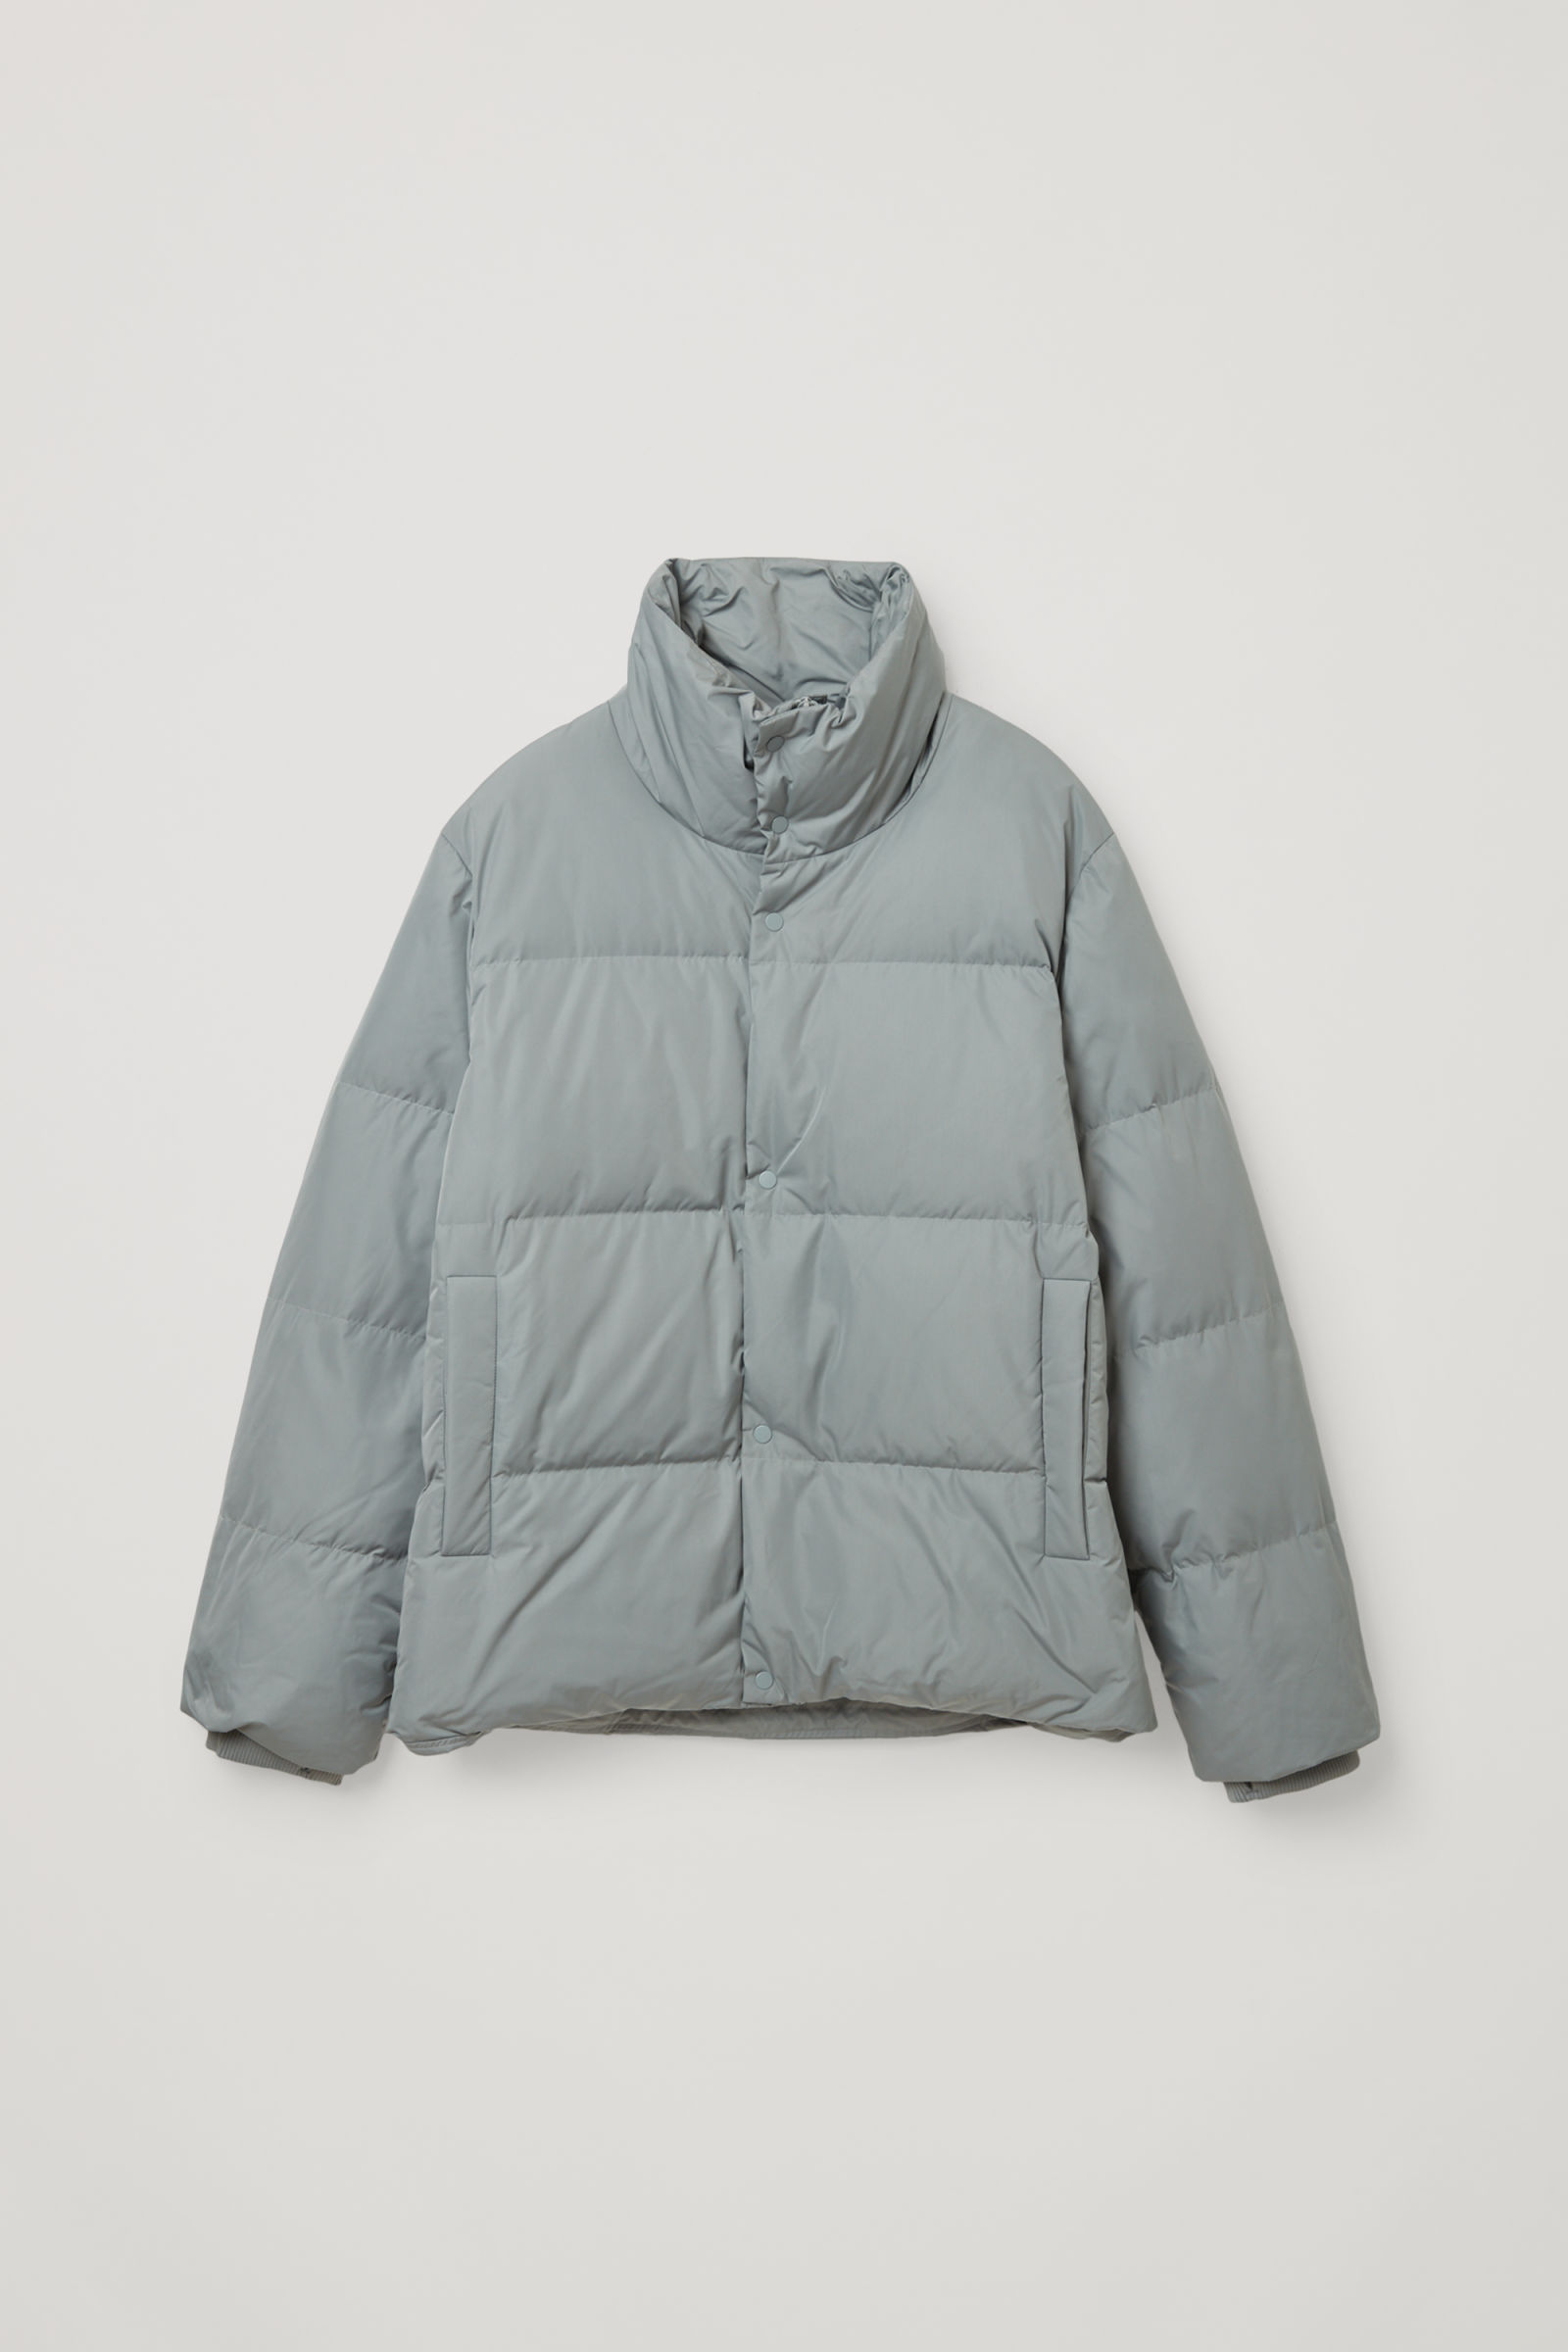 Vinteren kommer: 23 jakker frakker der holder varm og stilsikker - Euroman